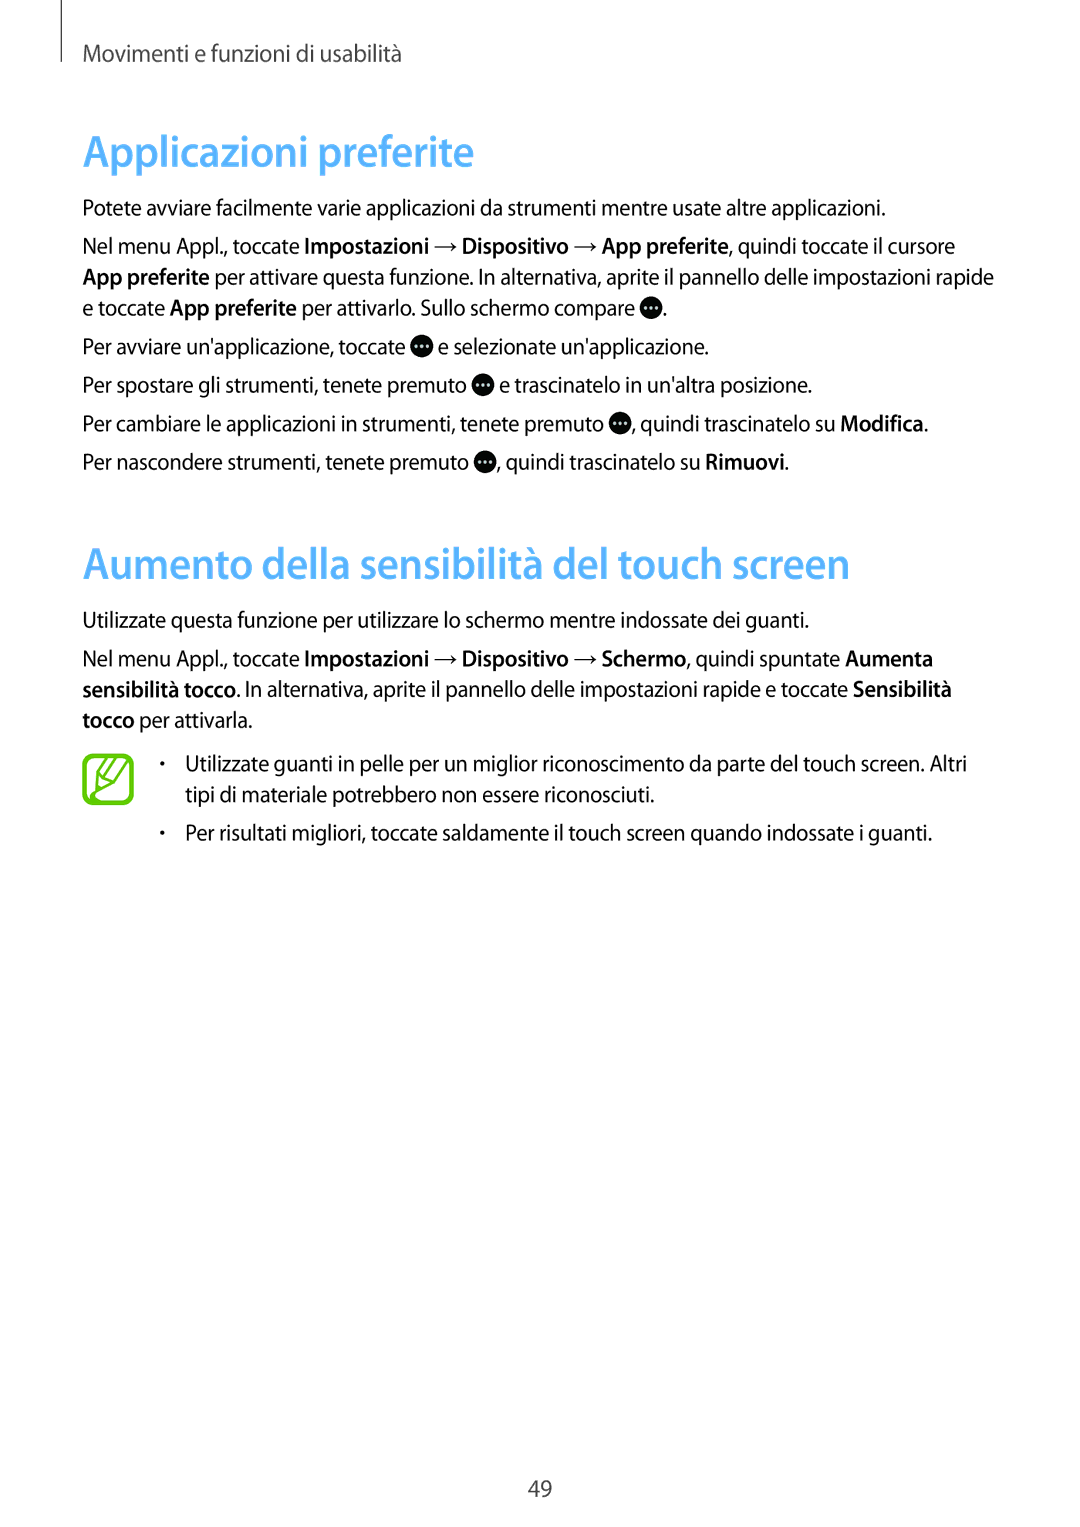 Samsung SM-T805NTSAITV, SM-T805NZWAXEO, SM-T805NZWAITV Applicazioni preferite, Aumento della sensibilità del touch screen 